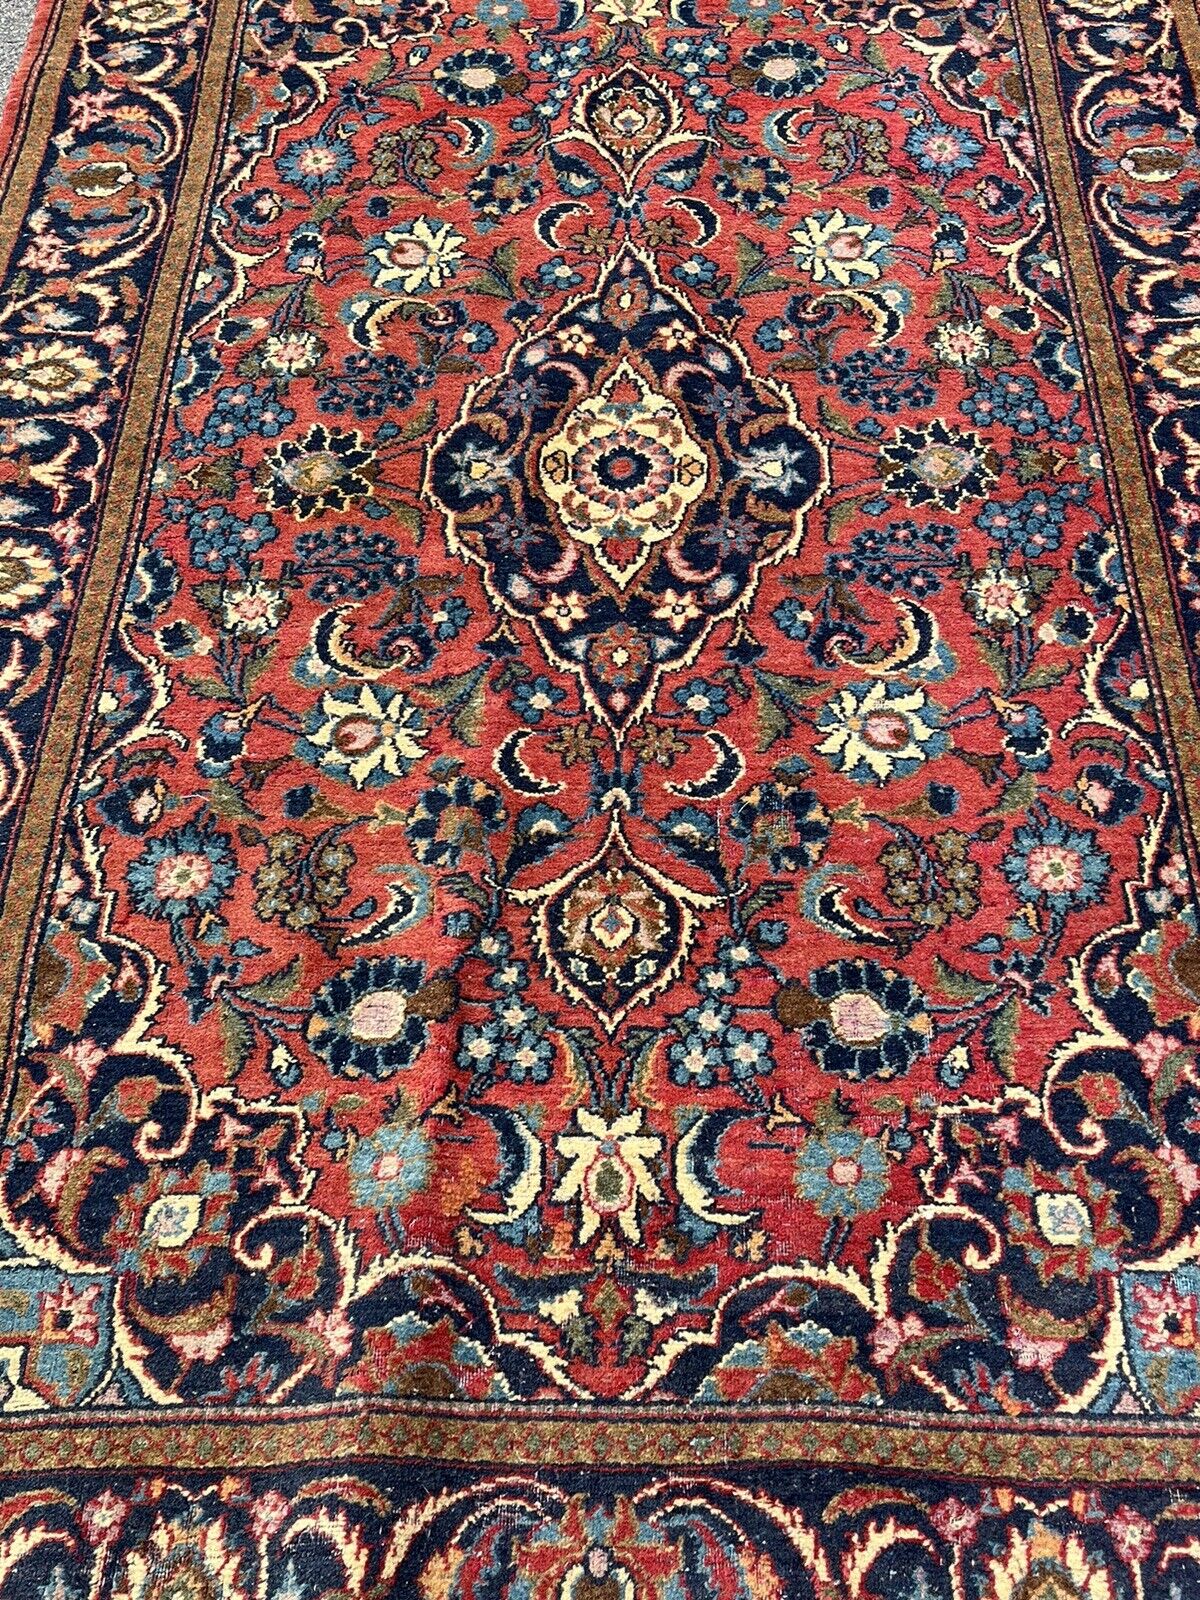 Rug, Carpet 218 X 137 Cms